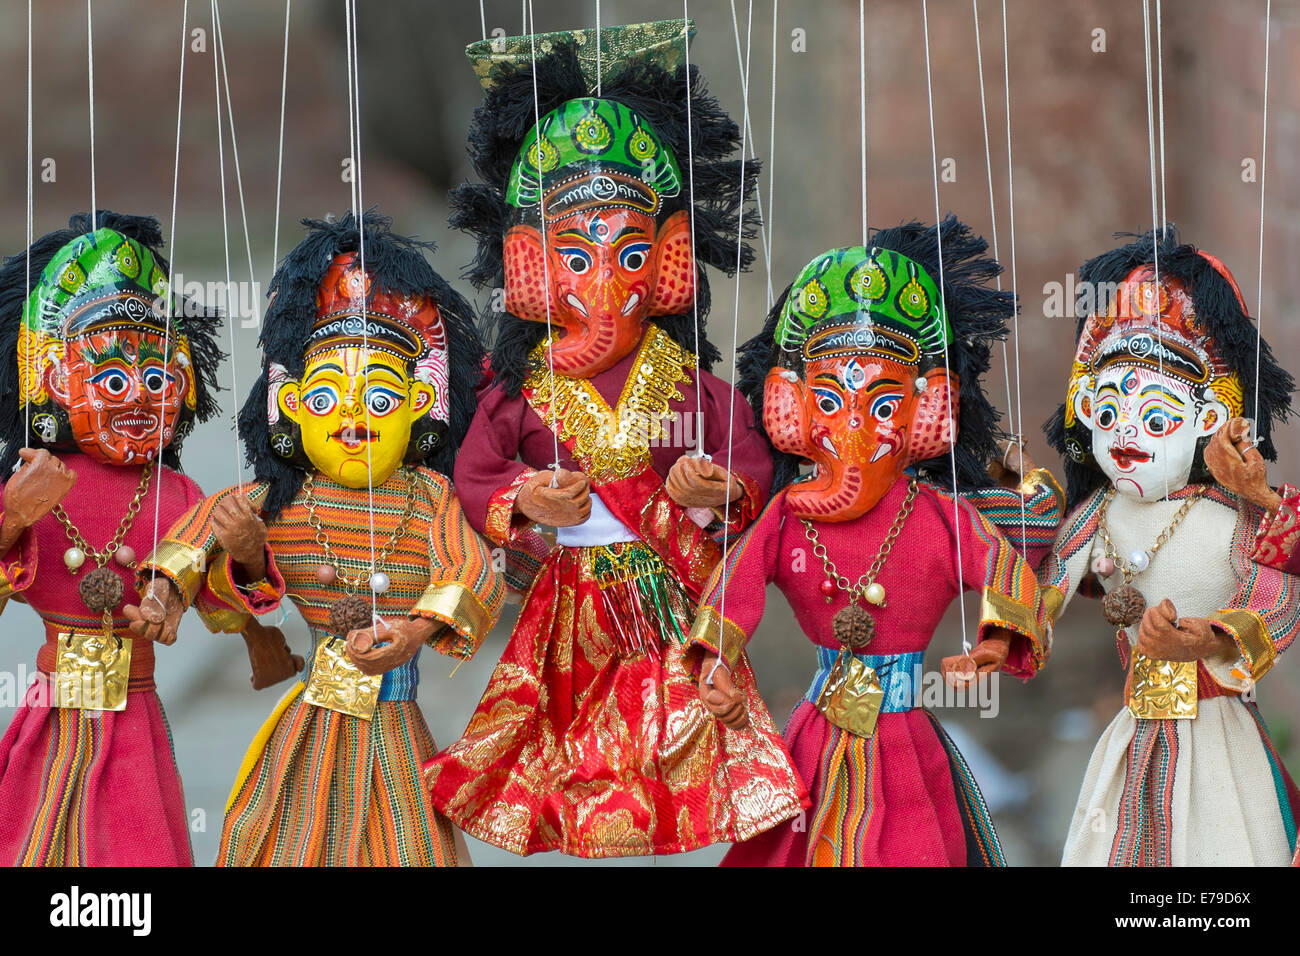 Ganesh la marionnette à vendre at a market stall, Katmandou, Népal Banque D'Images